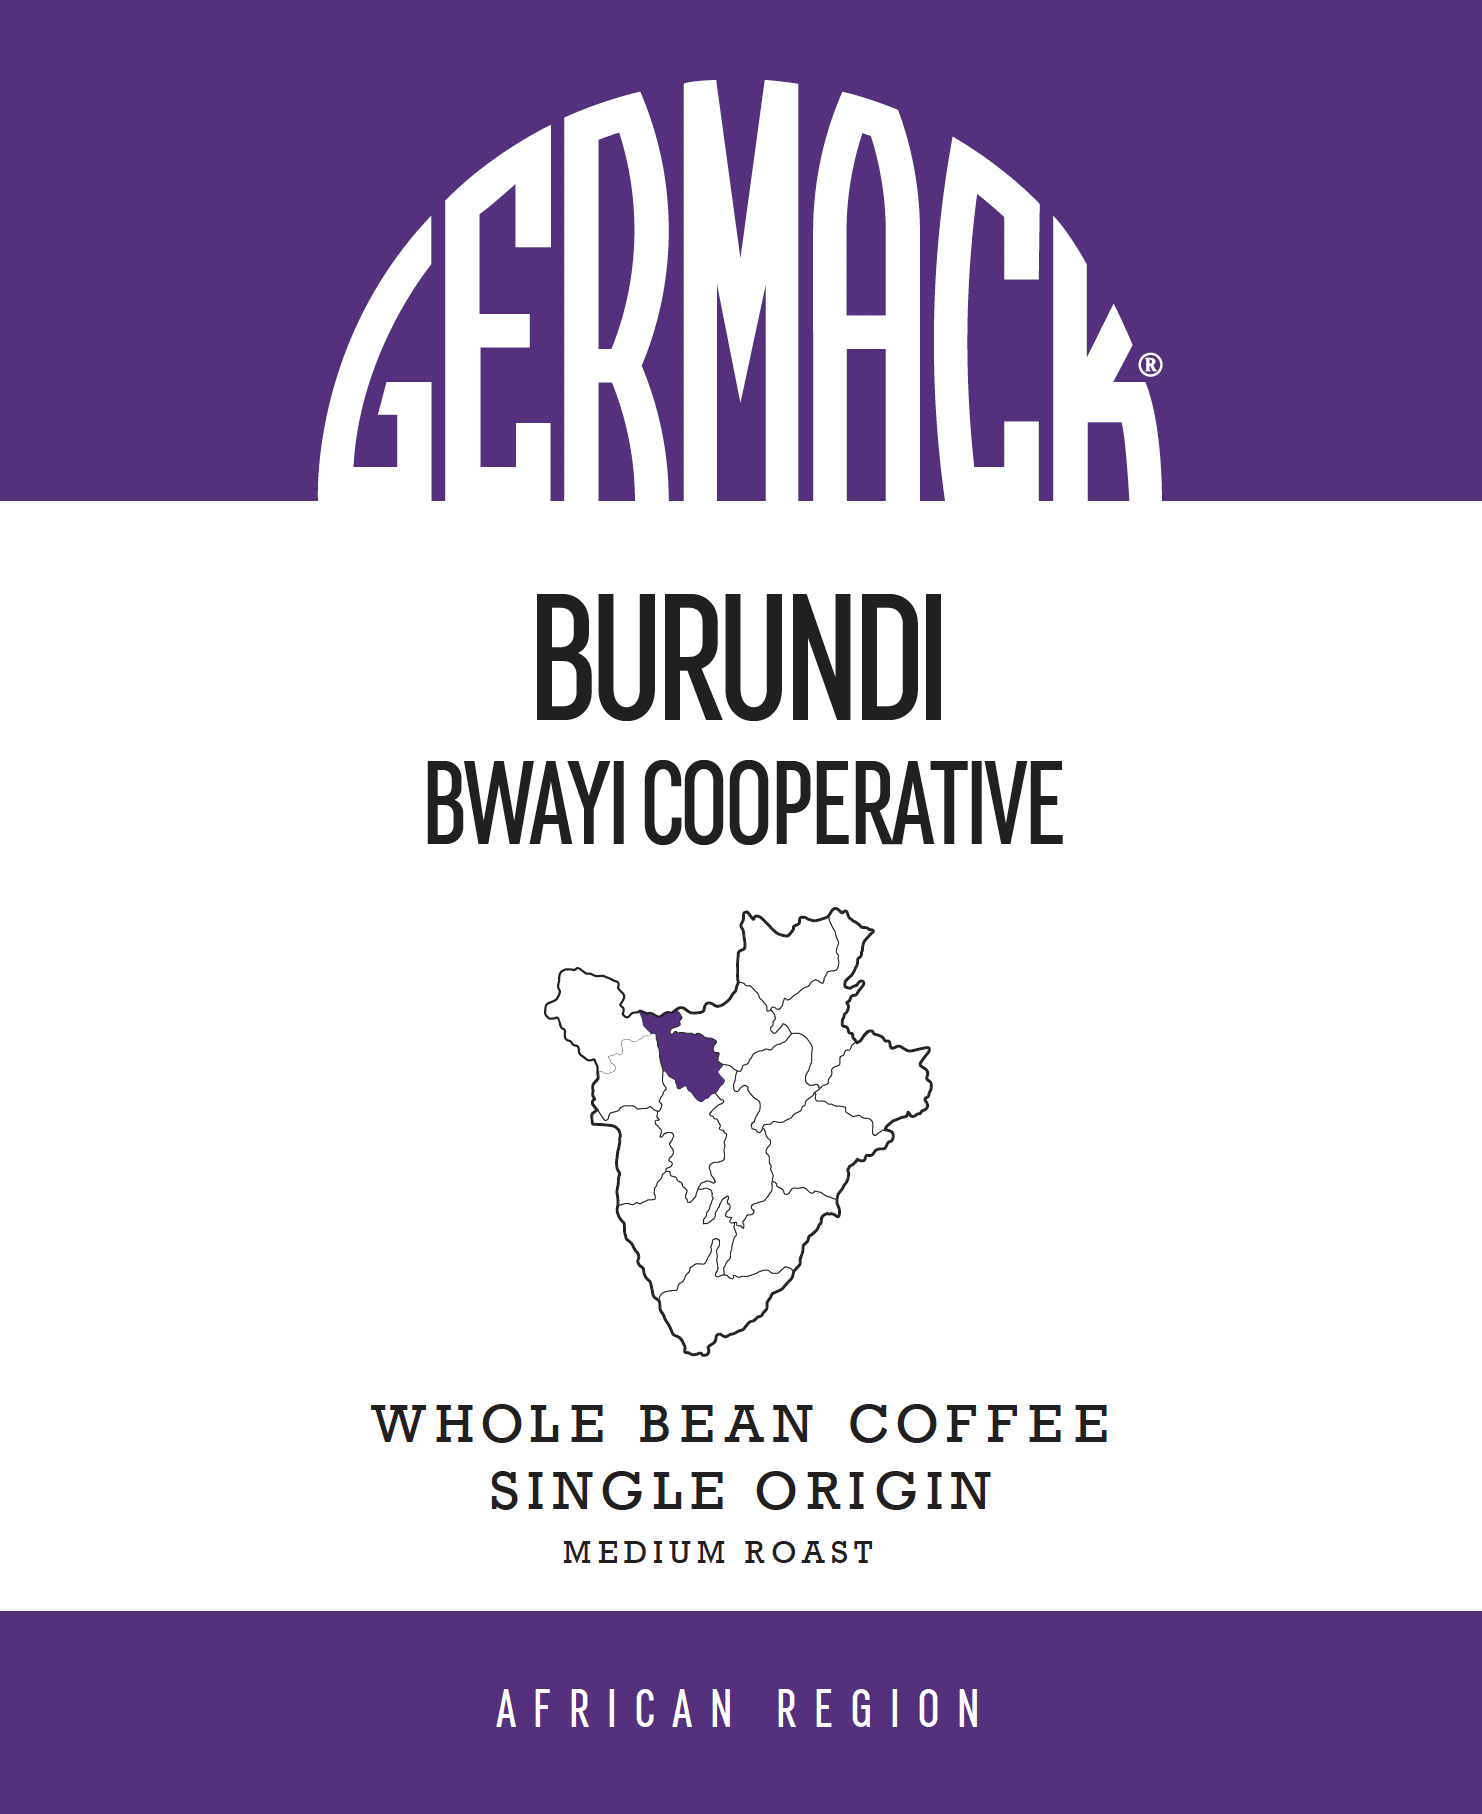 Picture Germack Coffee (5 LB.) - Burundi Bwayi Cooperative